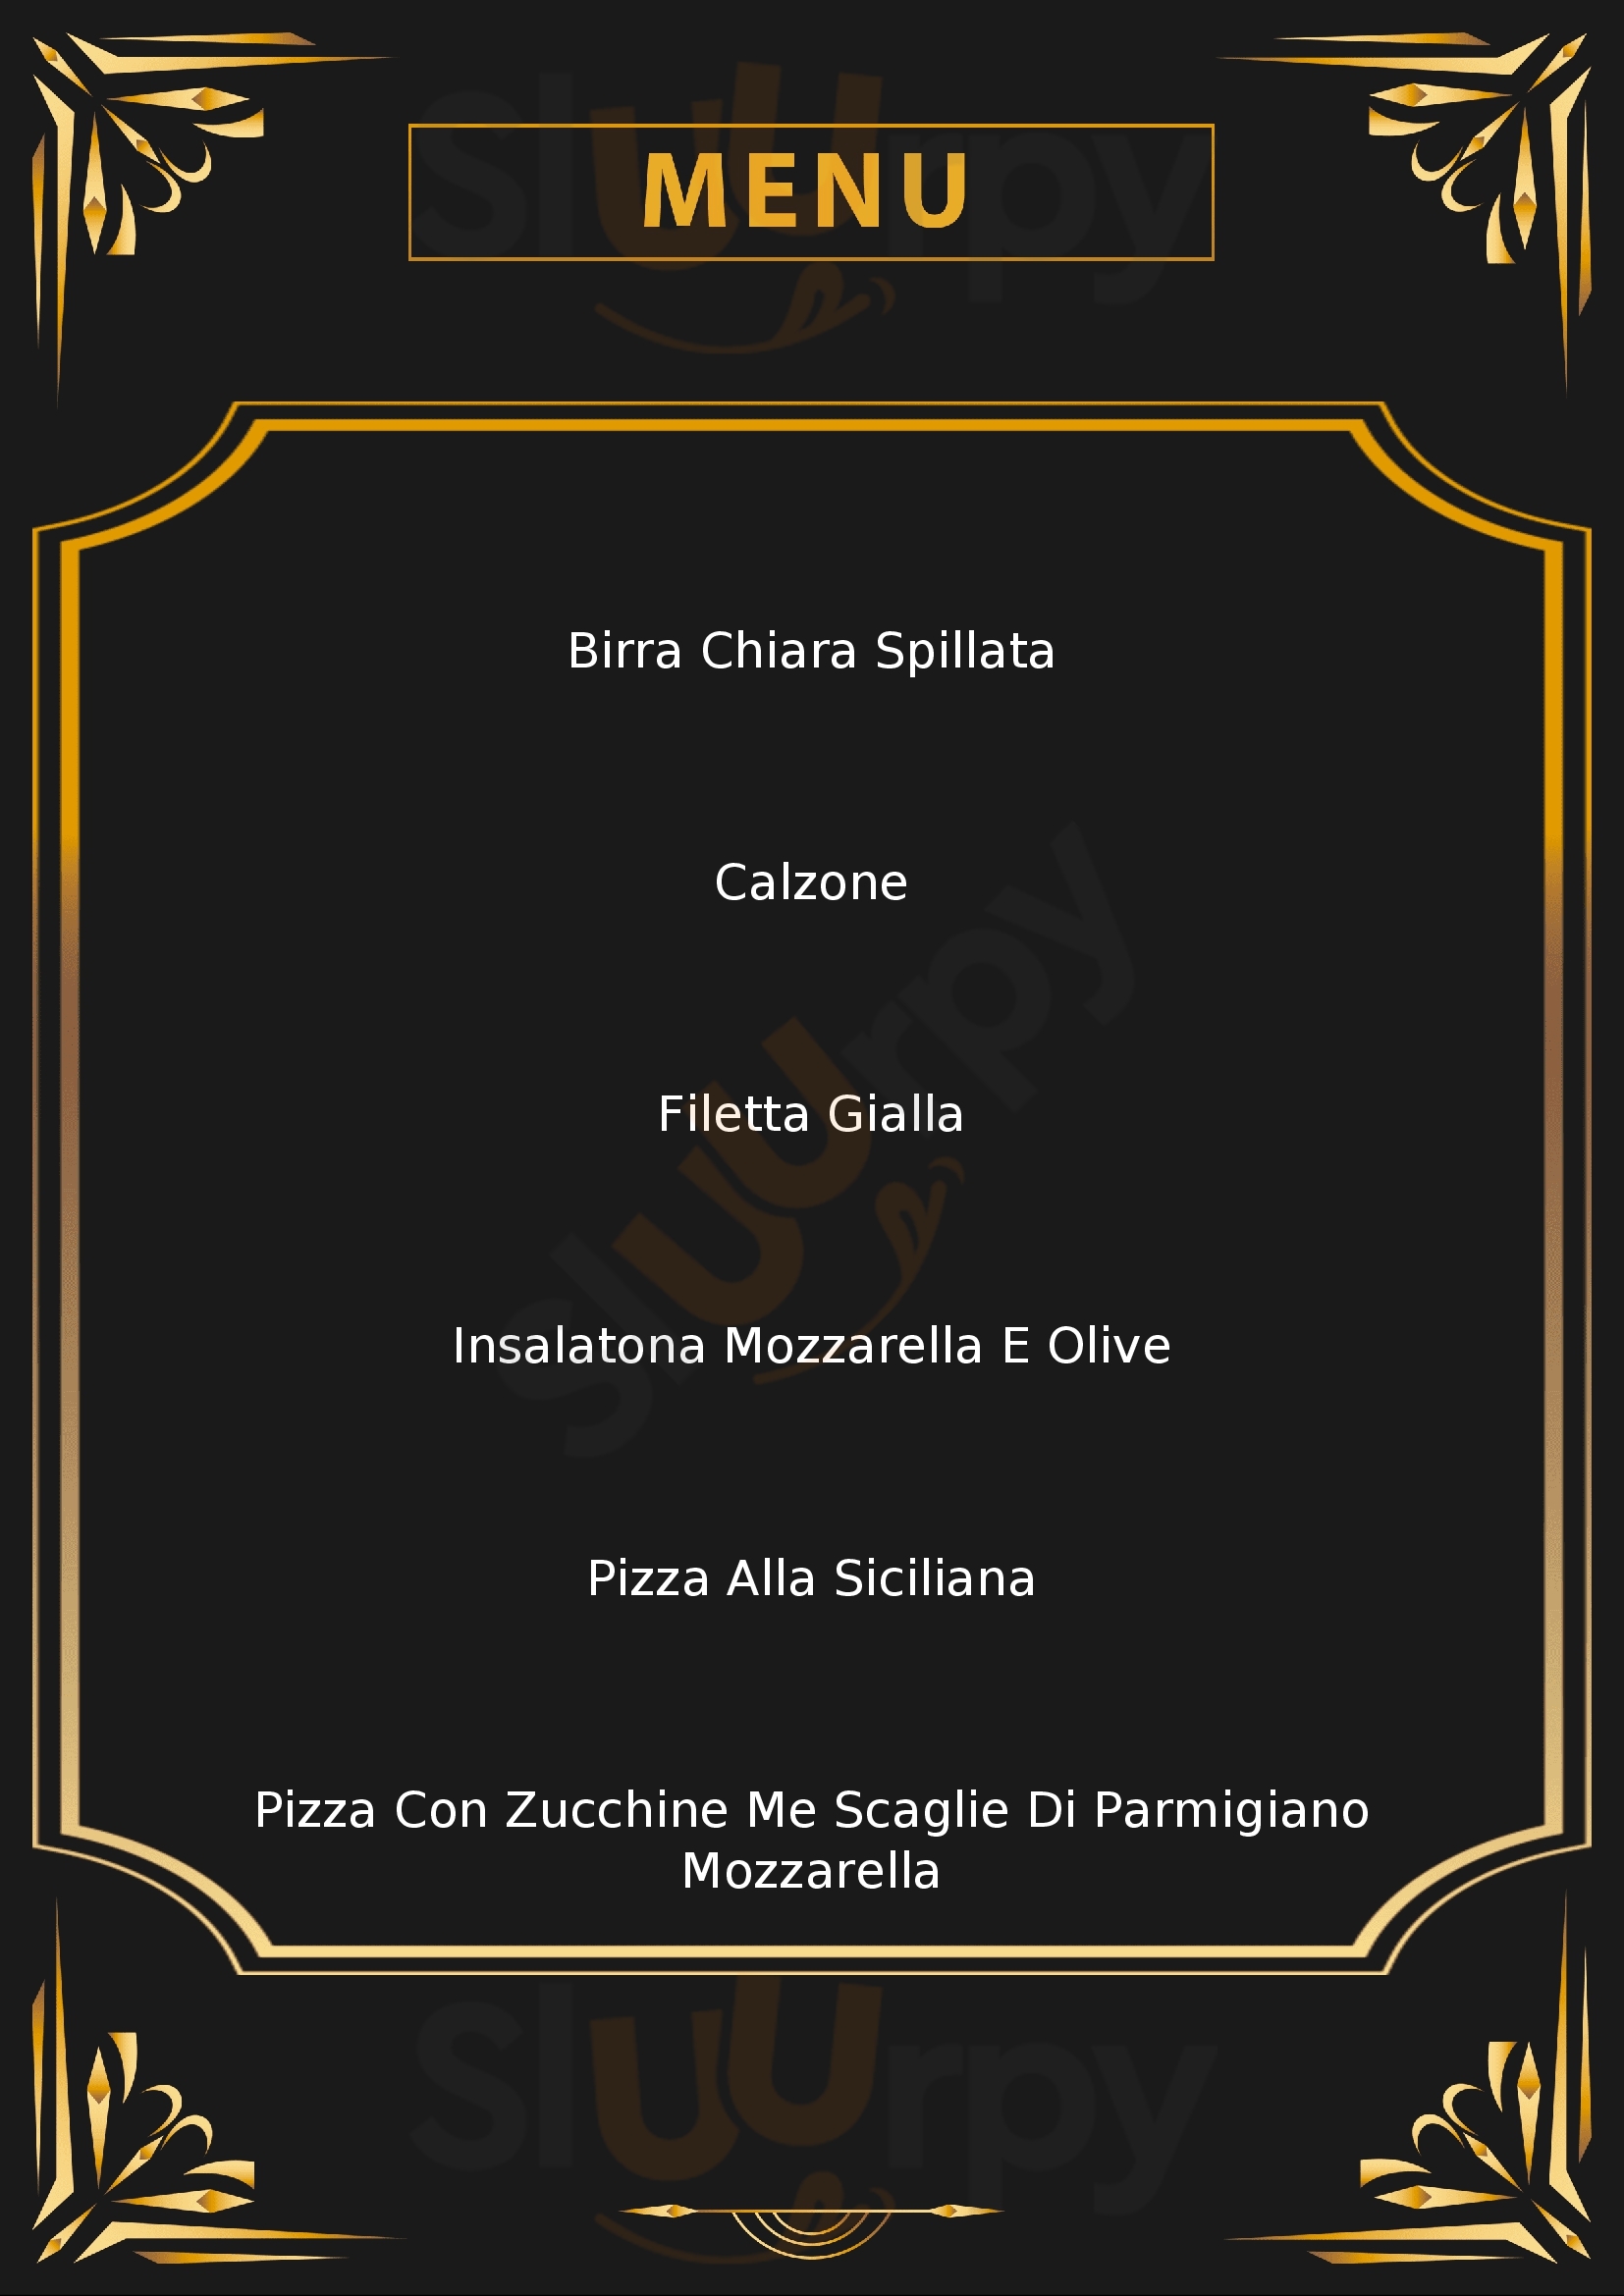 Michele Condurro Pizzeria Napoli menù 1 pagina